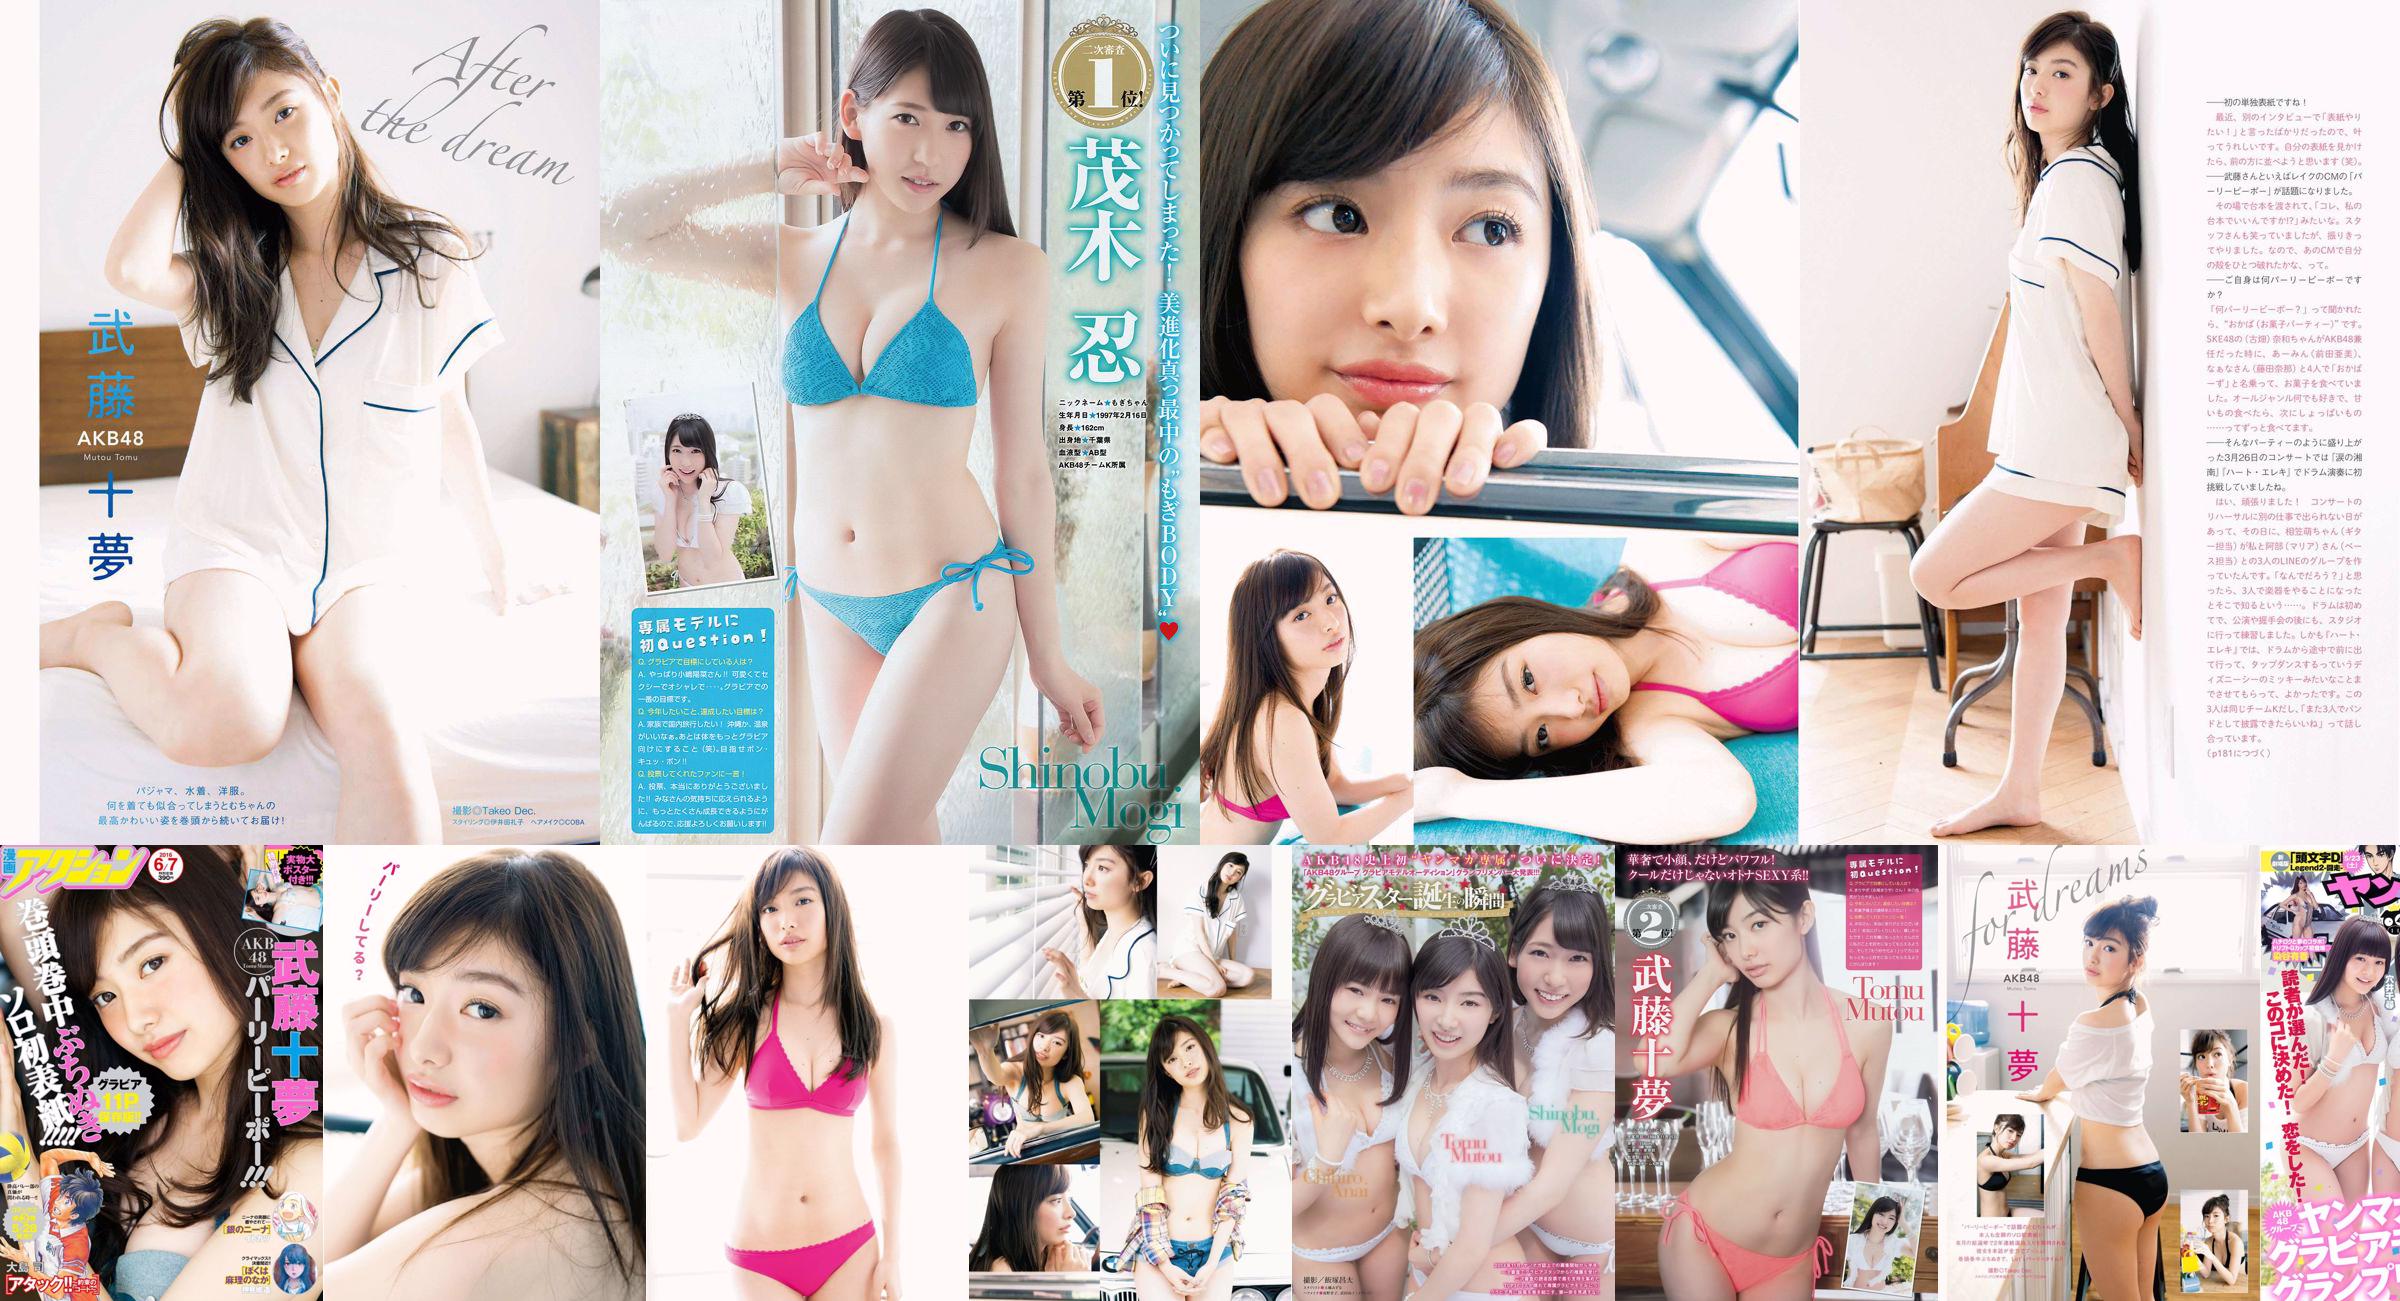 [Young Magazine] Tomu Muto Shinobu Mogi Chihiro Anai Erina Mano Yuka Someya 2015 No.25 Photograph No.a350ad Page 1